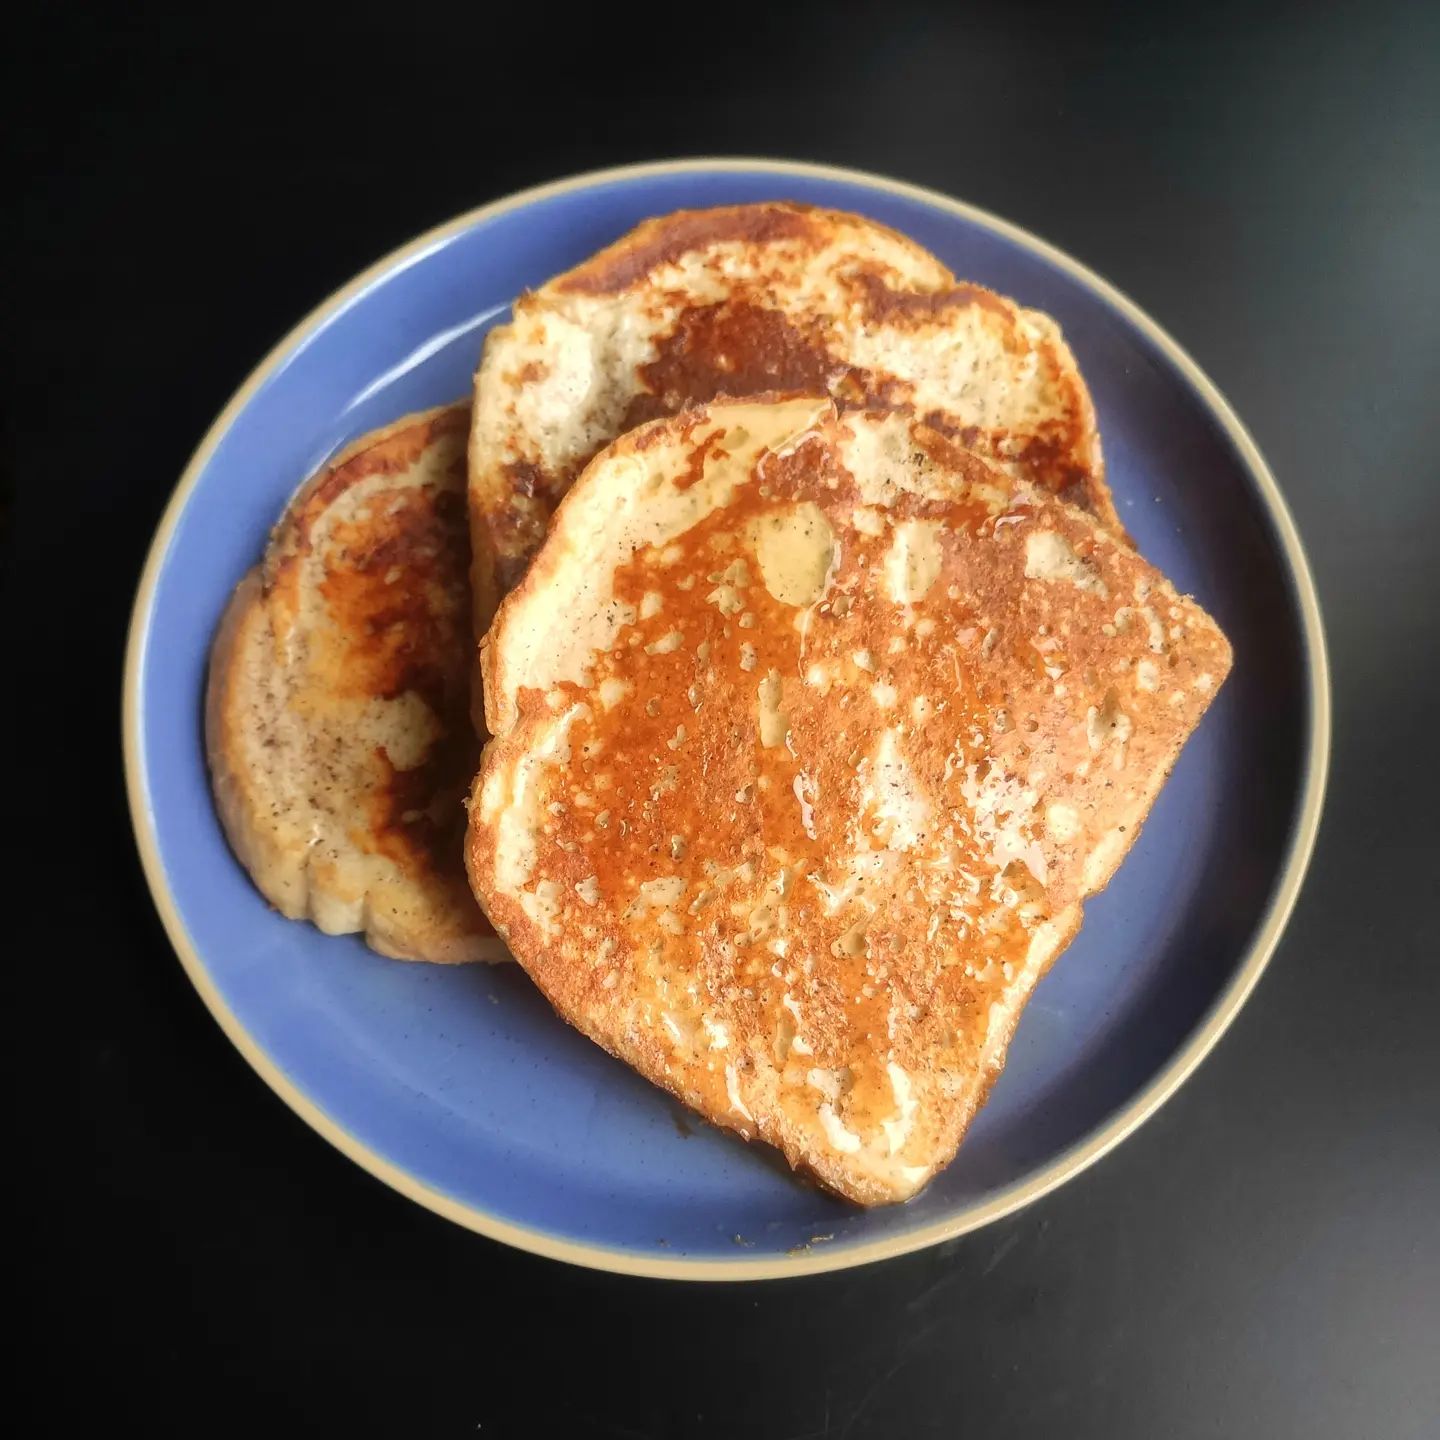 Французские тосты 🍞 
ℹ️ к|б|ж|у на порцию ~ 450 | 42 | 6 | 55
.
Блюдо, кроме шуток, способное изменить жизнь. Почти десерт, который можно и нужно включать в режим питания, чтобы получать больше белка ценой меньших калорий, попутно сделав рацион вкуснее и интереснее.
.
Рецепт на сайте, бесплатно: milpostres.ru/french-toast/ ⬅️ ссылка в профиле